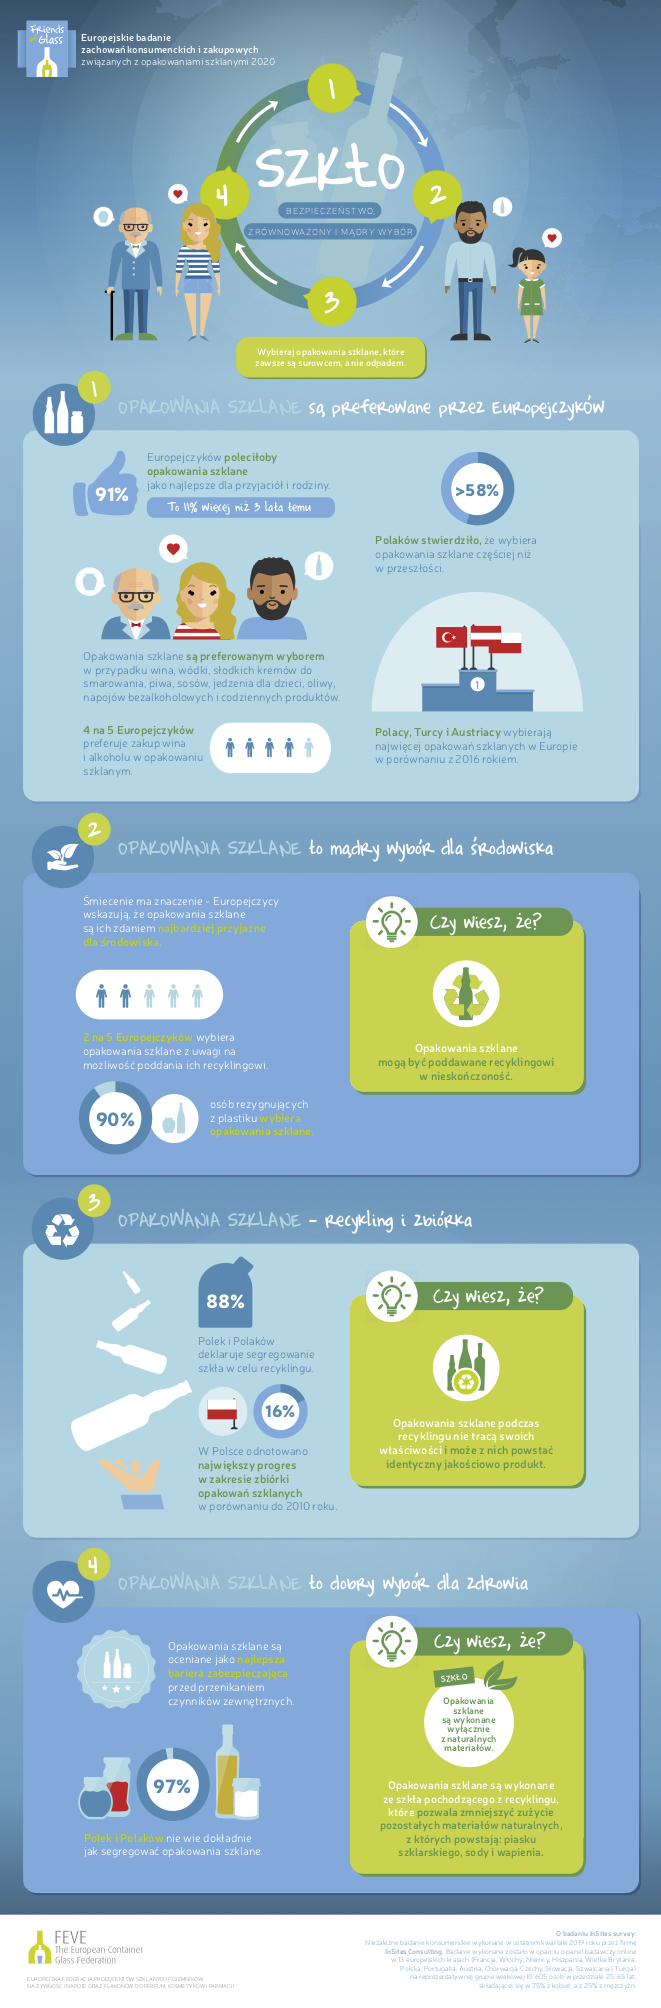 Recykling w Polsce na fali wzrostu – BADANIE Badania Infografika 4 filary